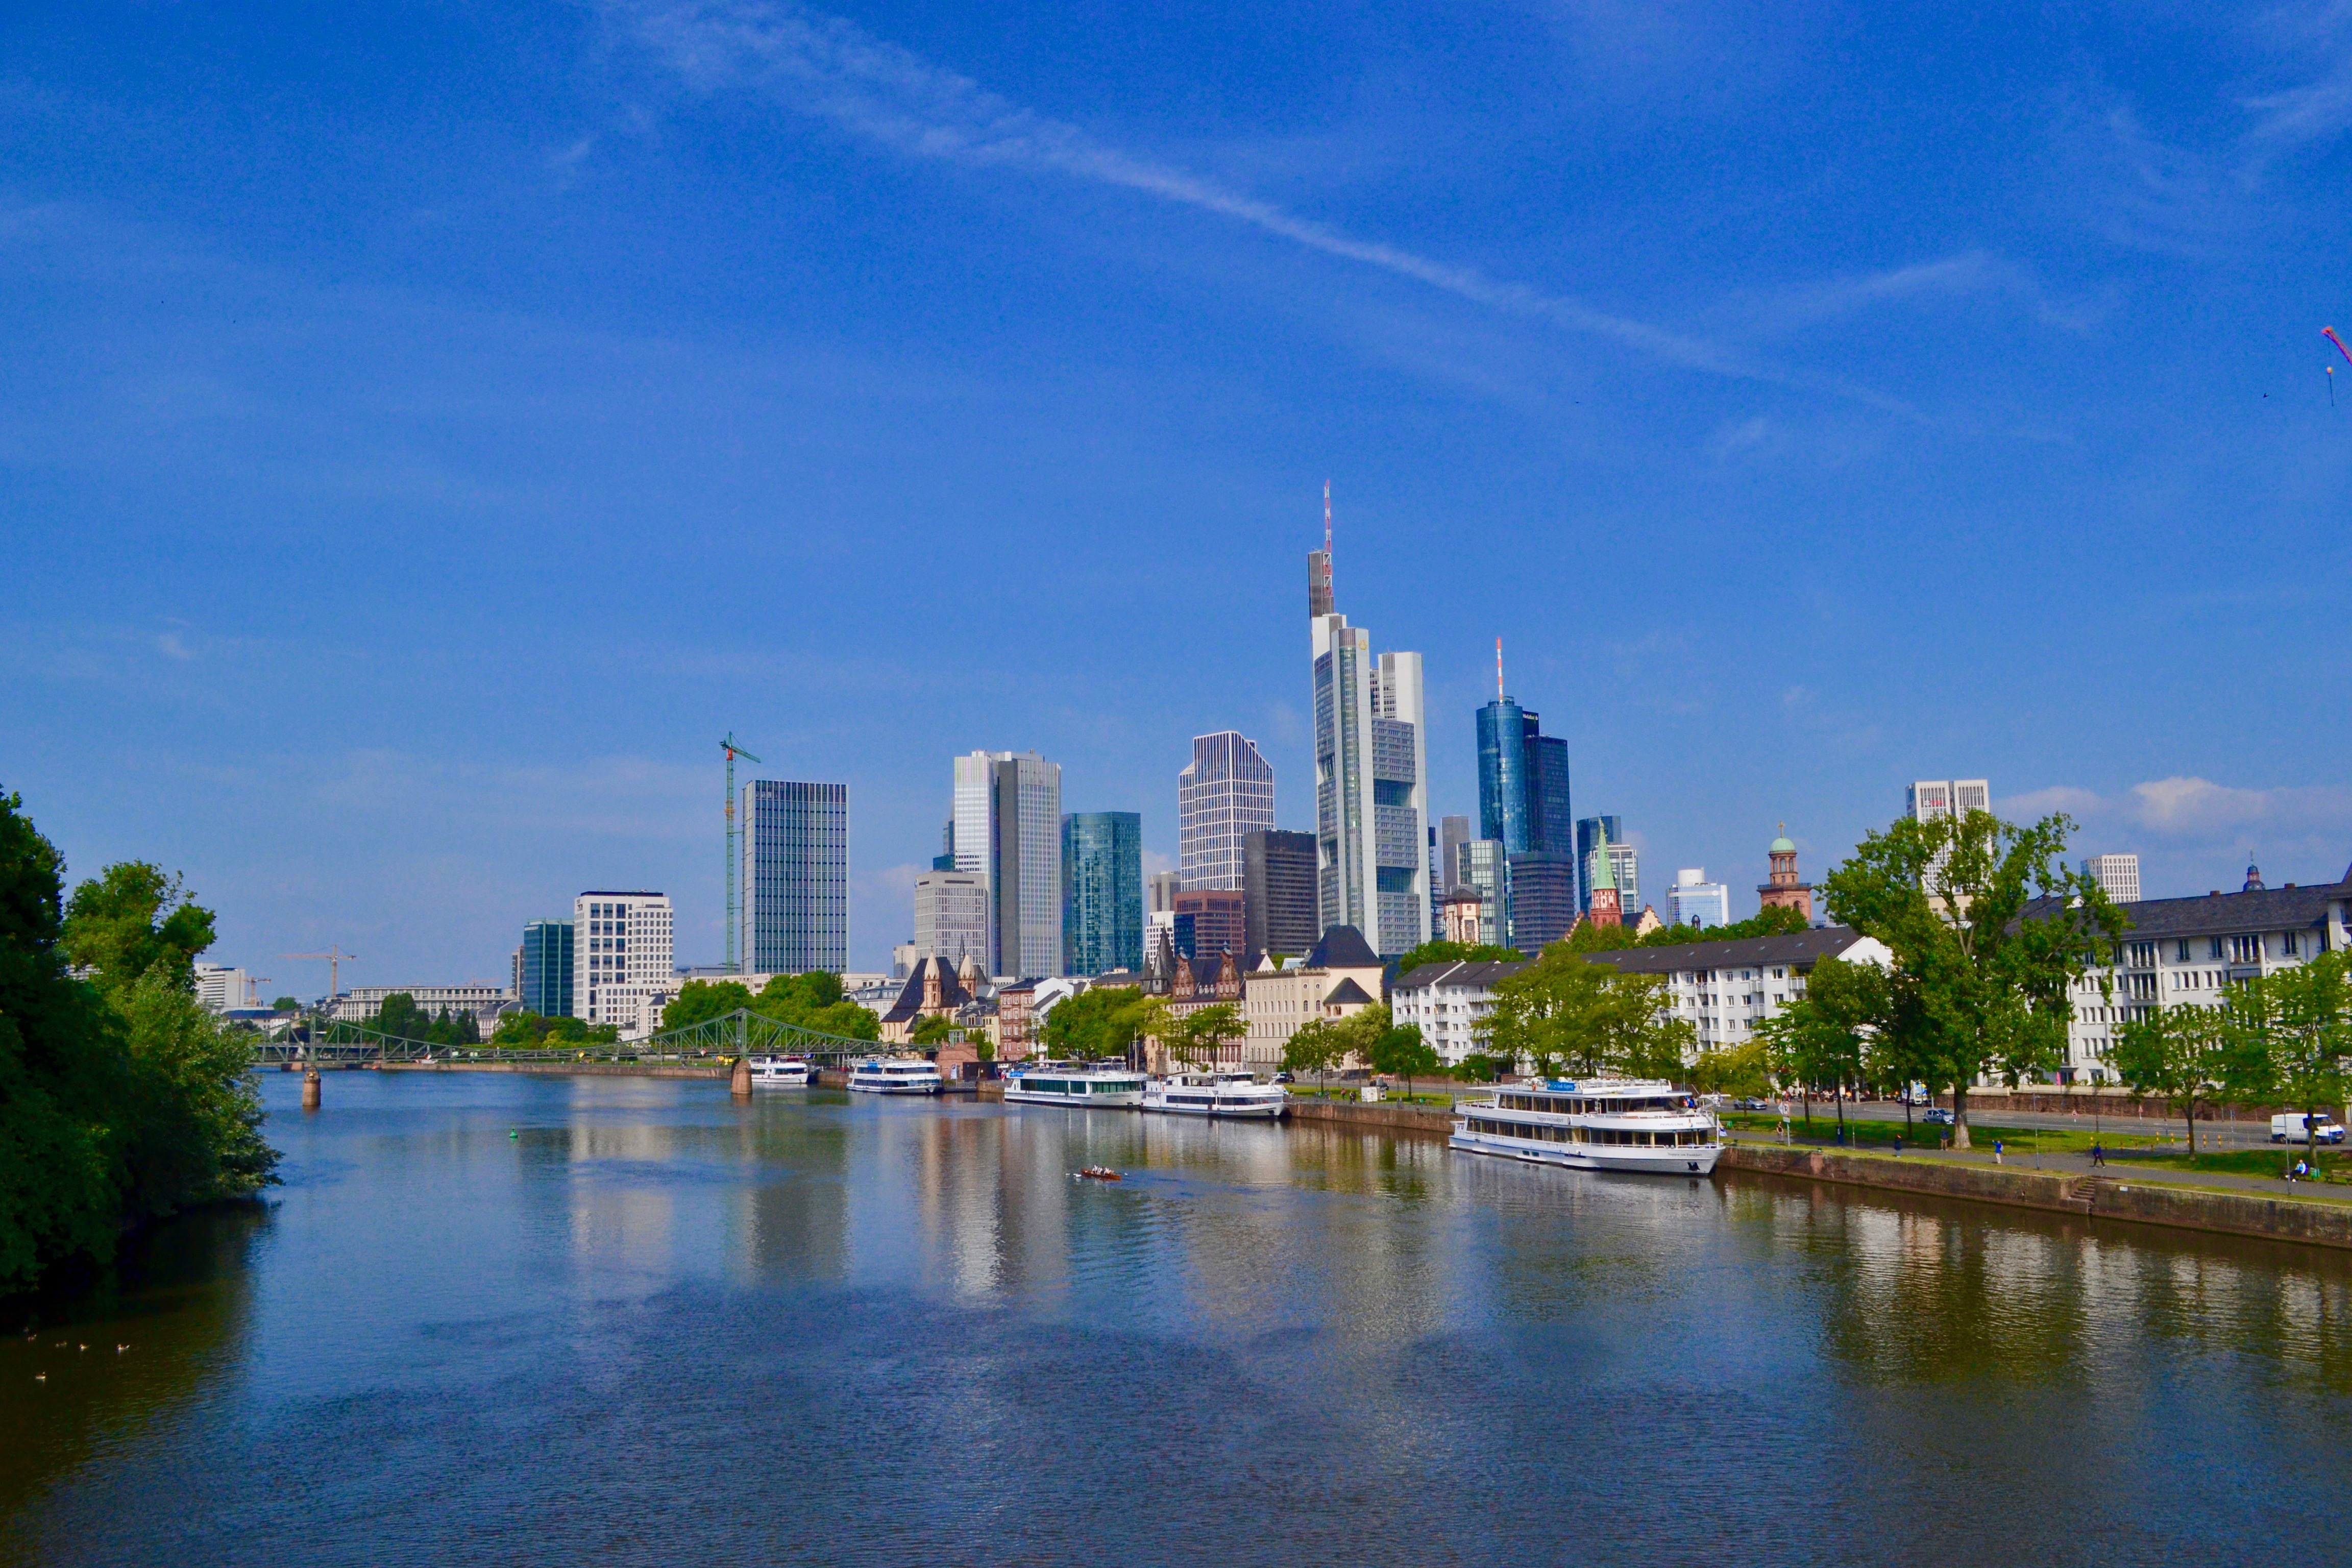 Frankfurt Skyline